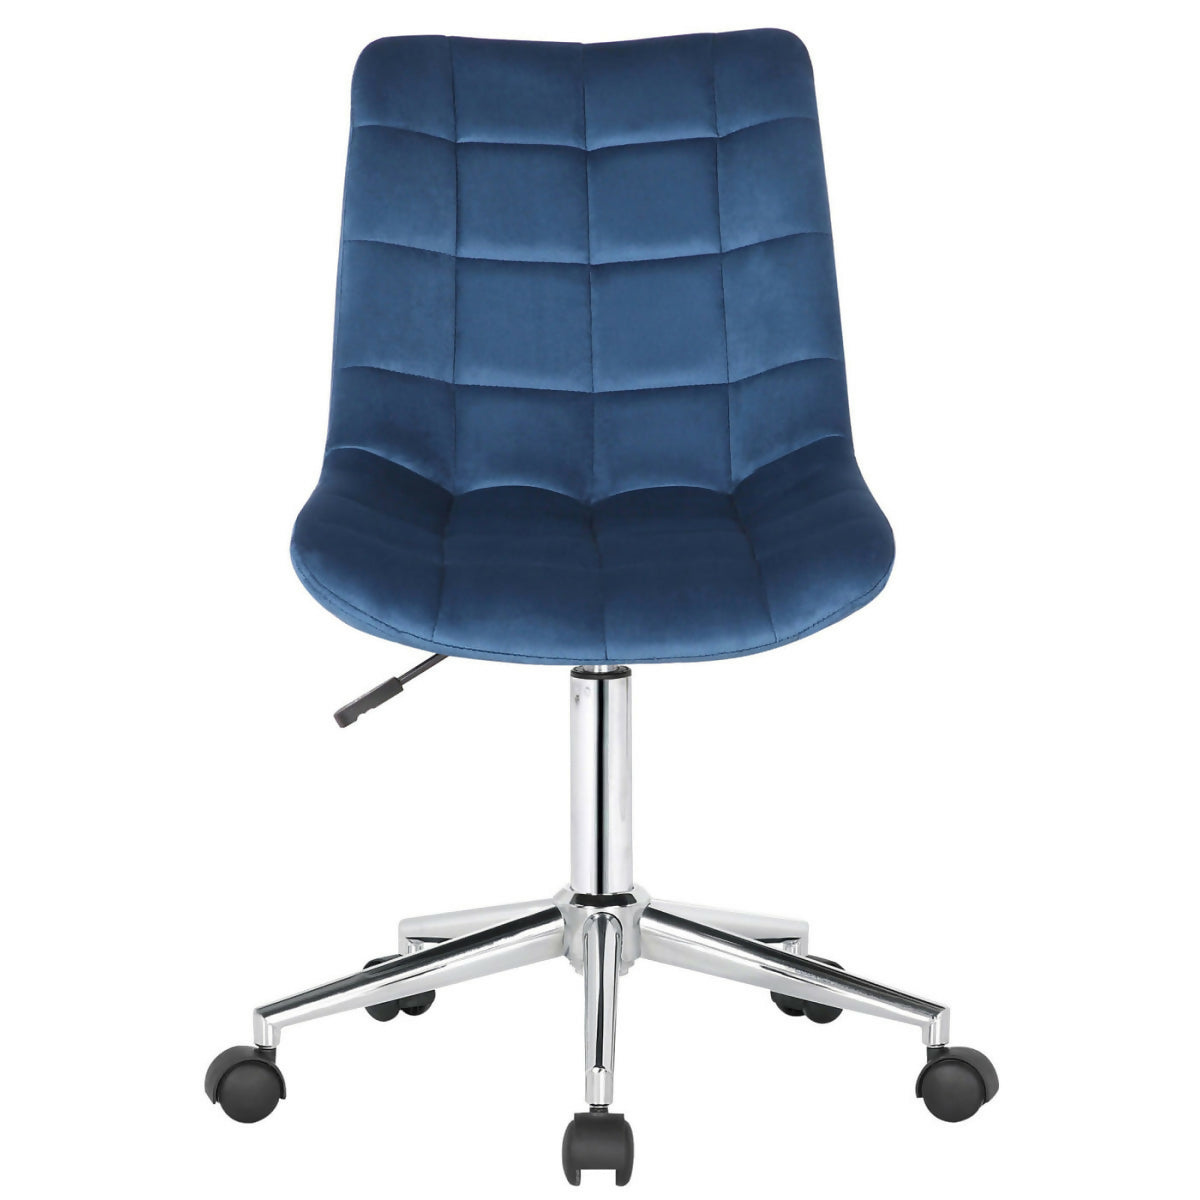 Medford office chair - Blue velvet